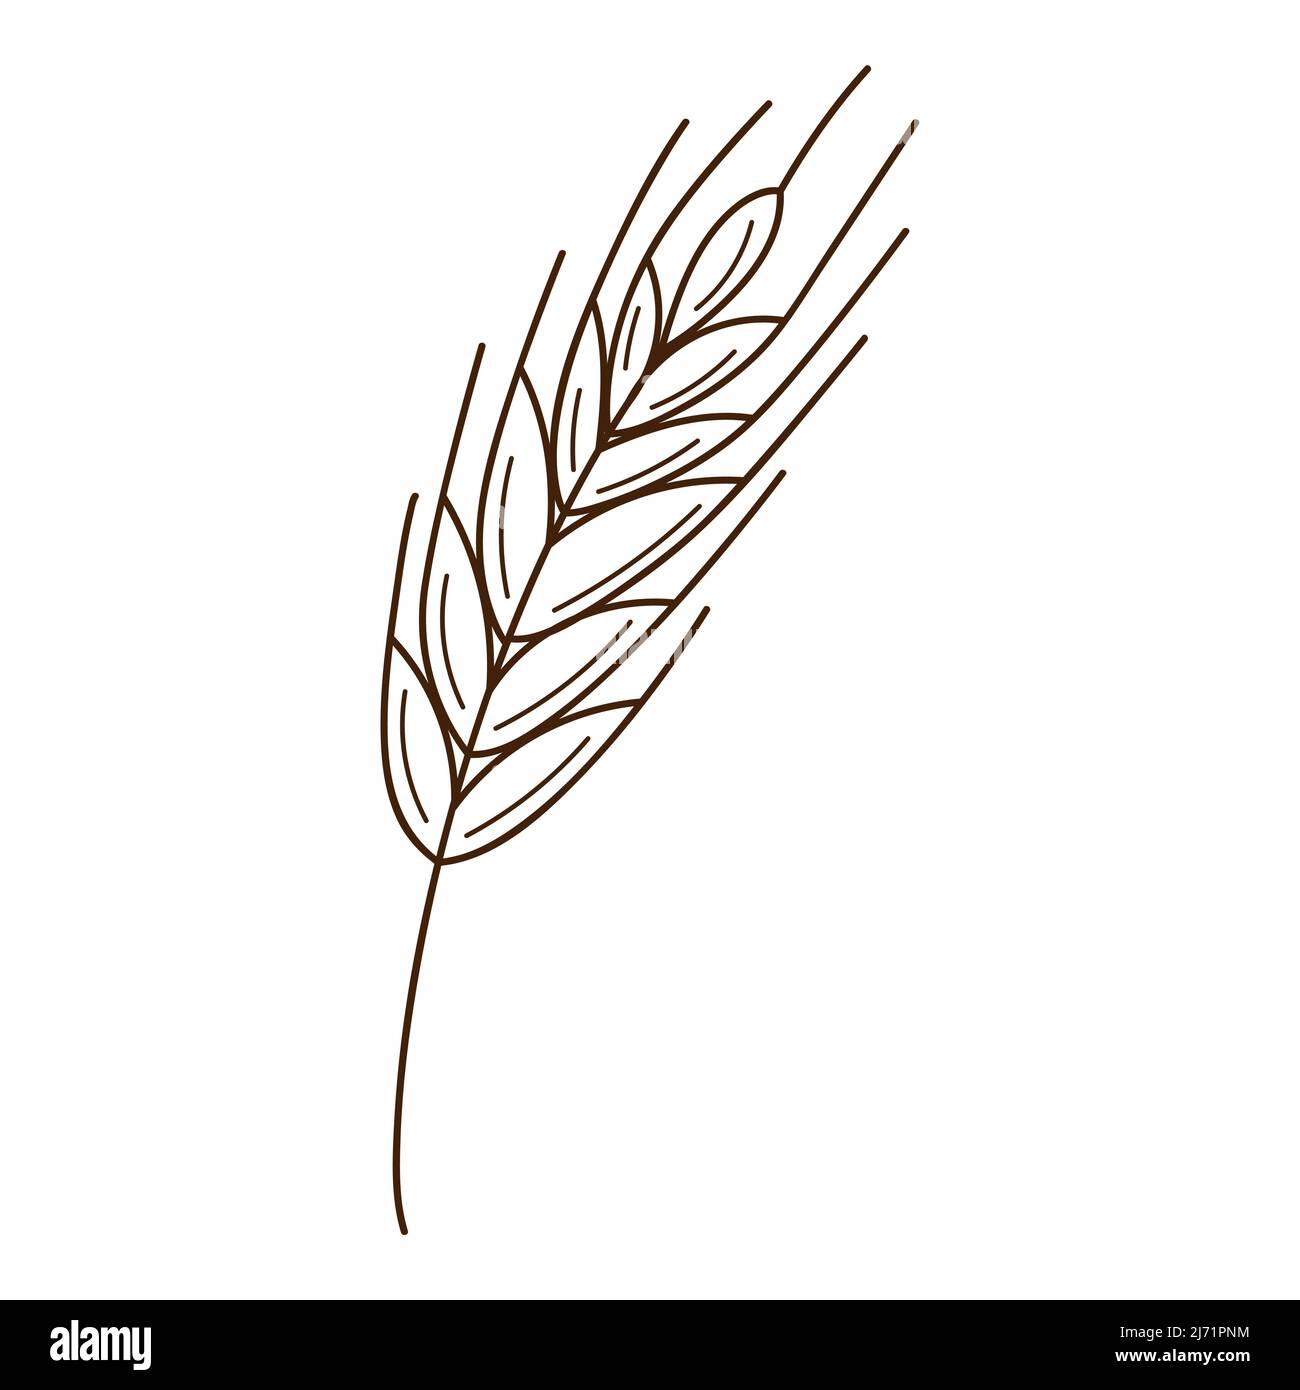 Weizen, Roggenspikelet. Ein Symbol des Herbstes, die Ernte. Designelement mit Umriss. Doodle, handgezeichnet. Flaches Design. Schwarz-weiße Vektorgrafik. Isola Stock Vektor